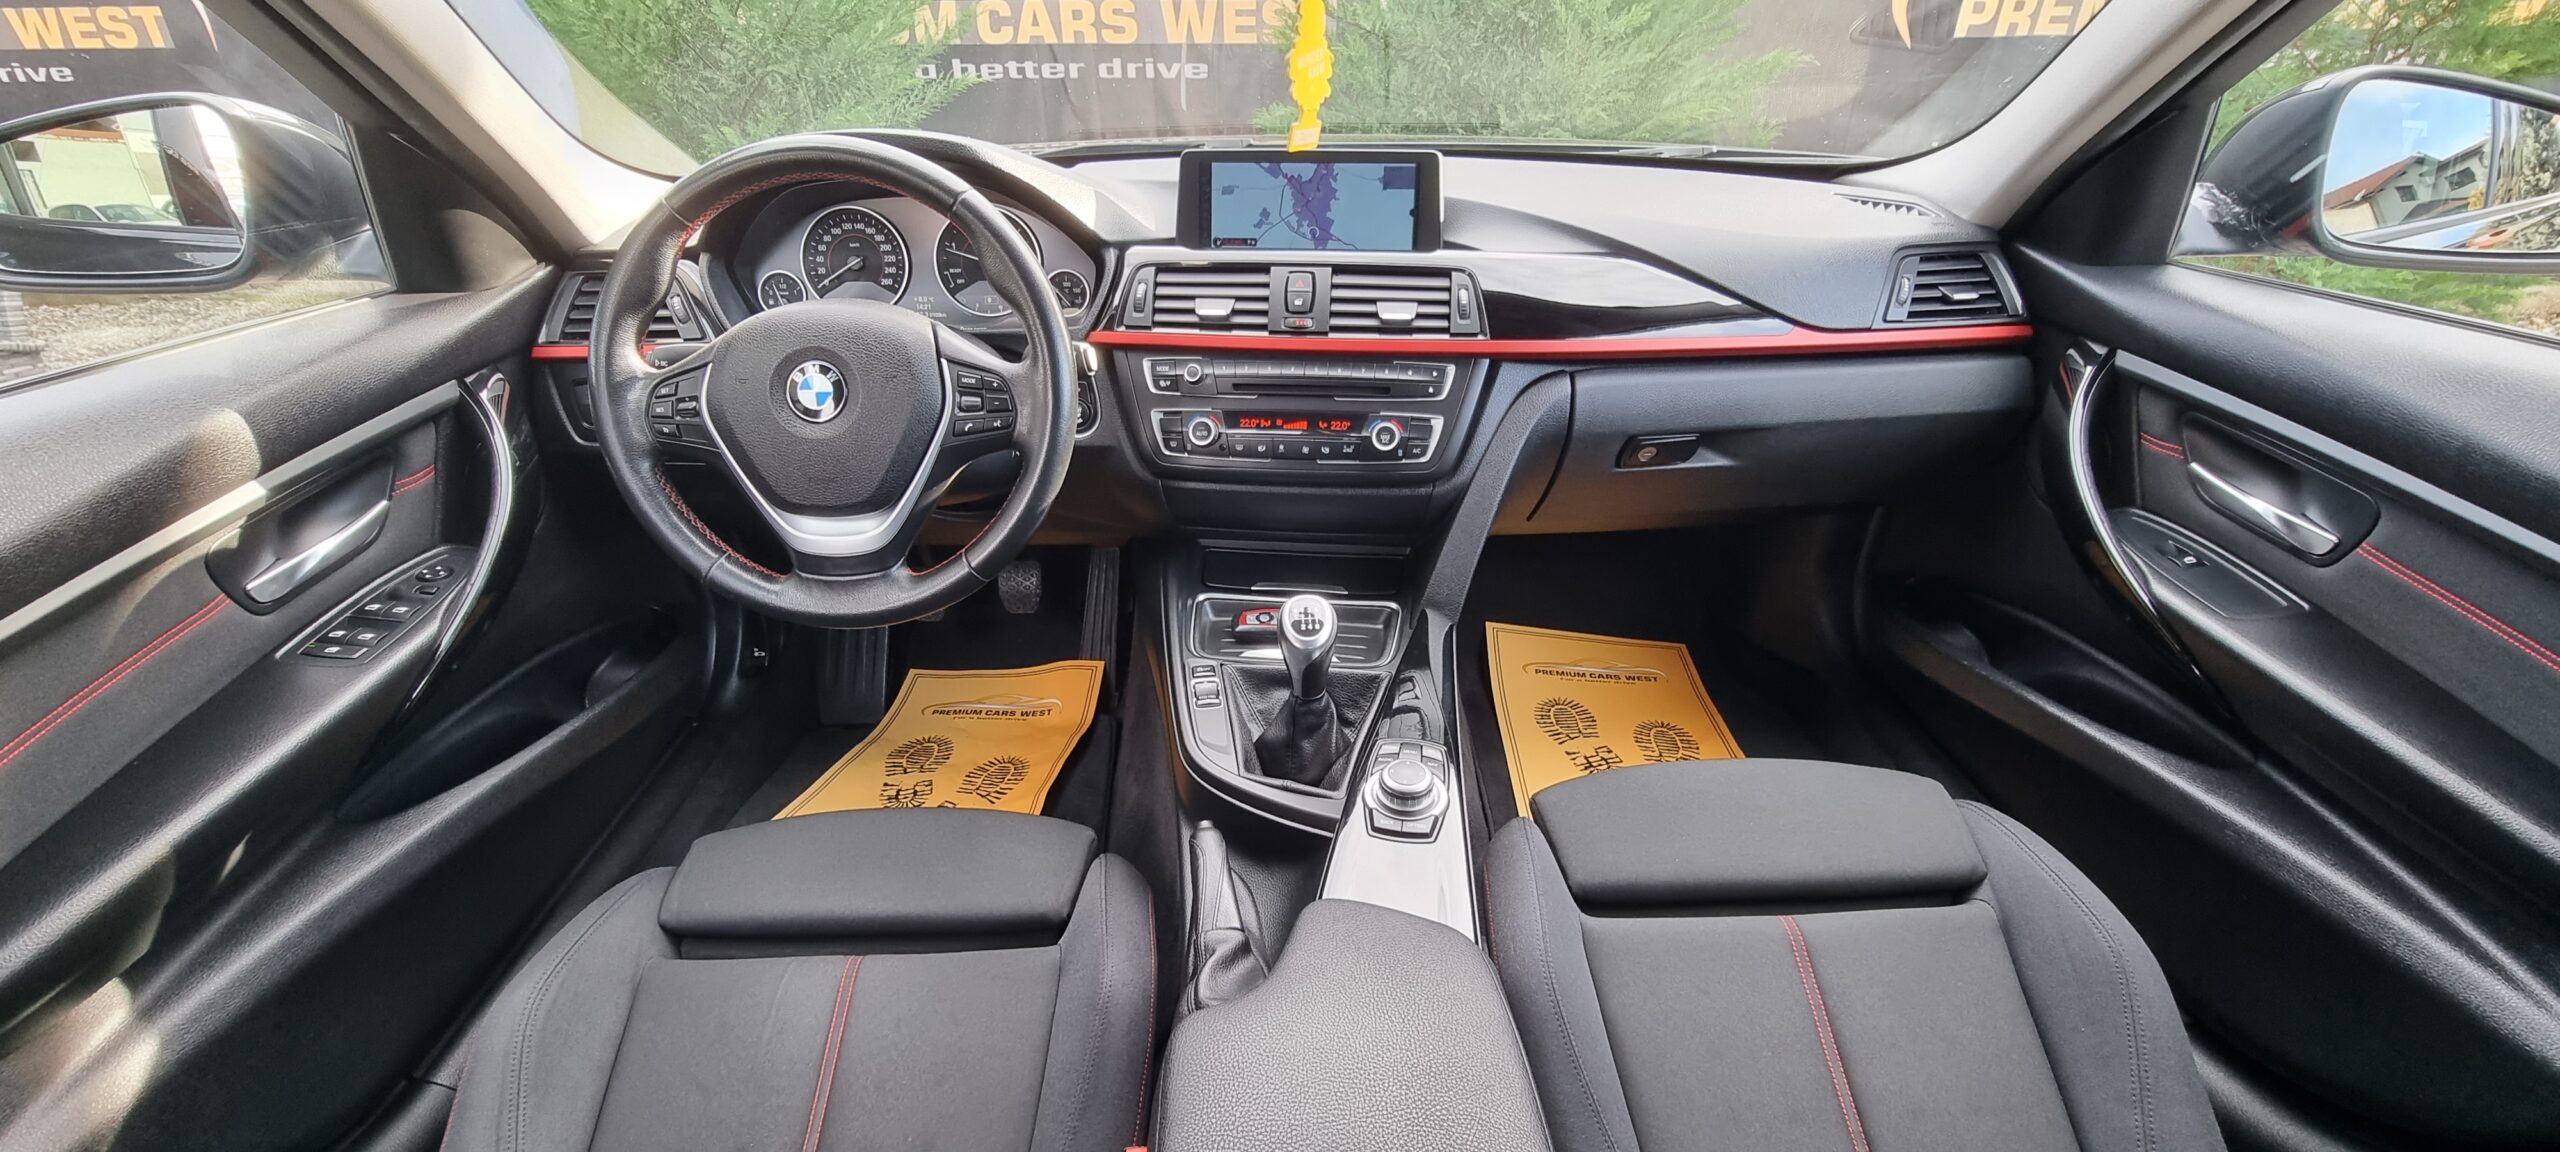 BMW F30 AN 2012